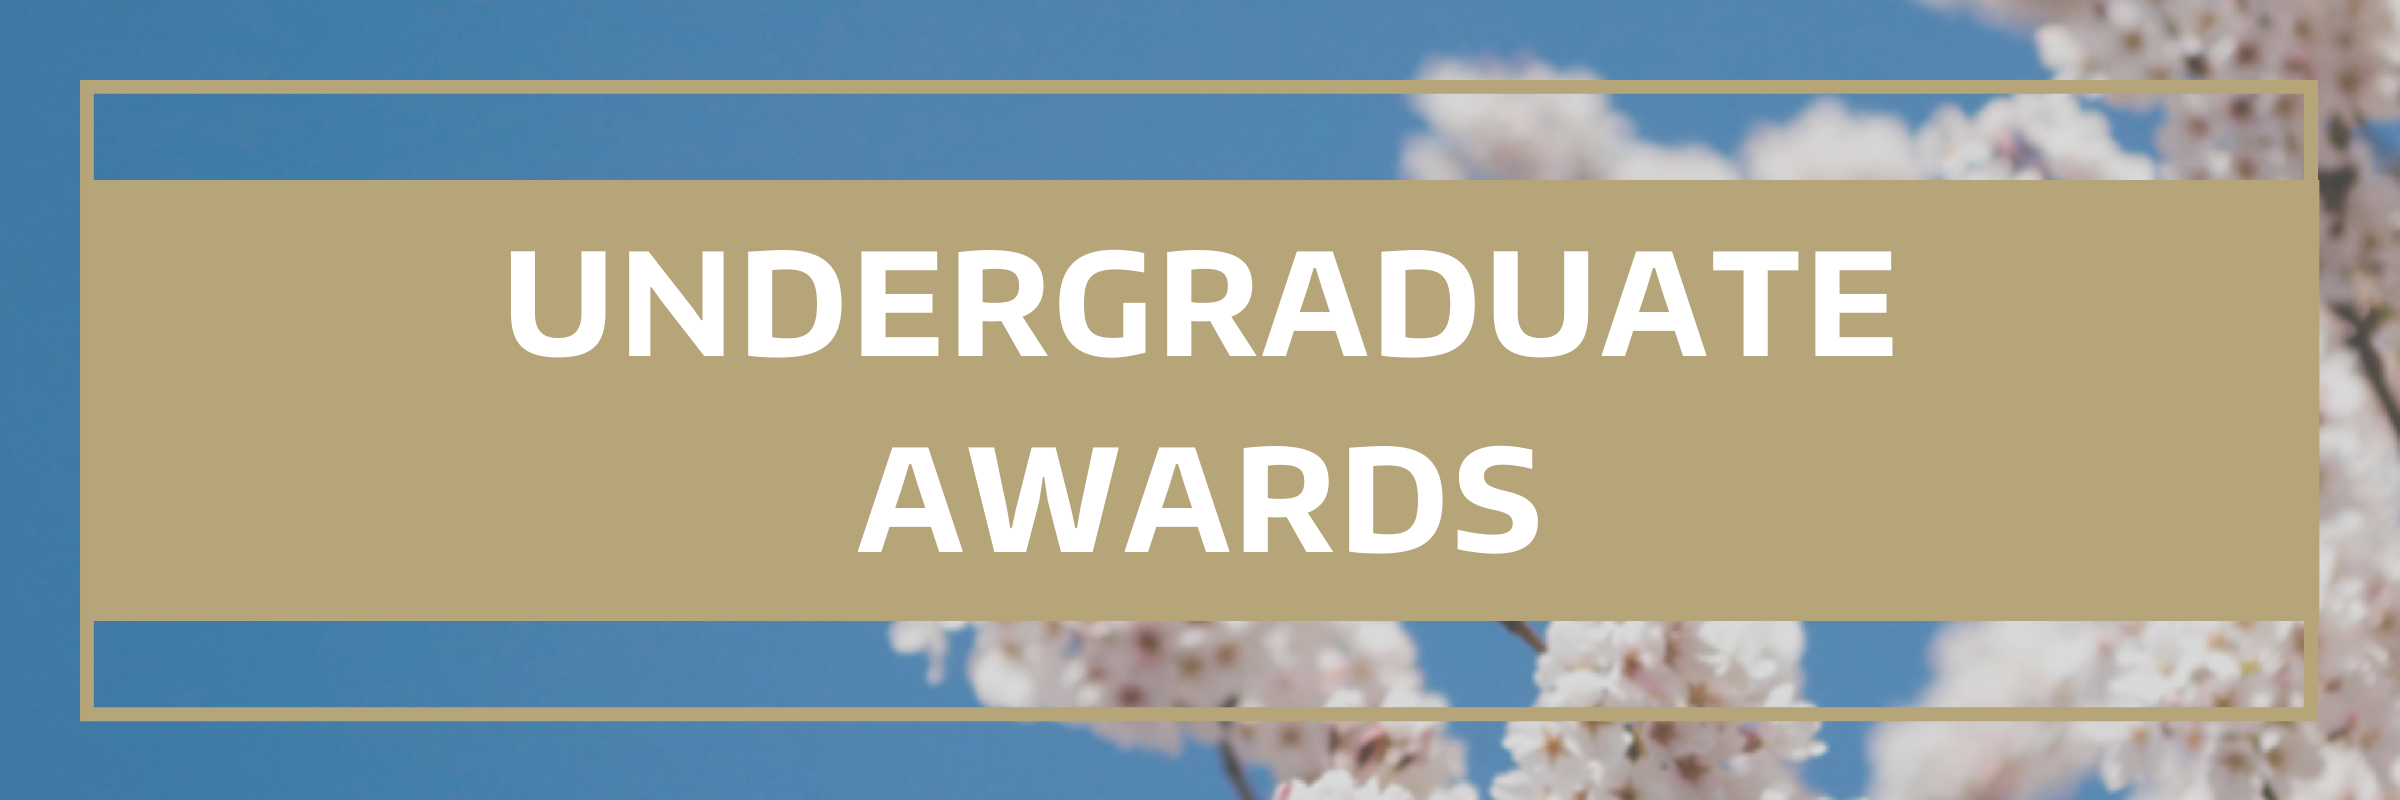 2021_Undergraduate_Awards